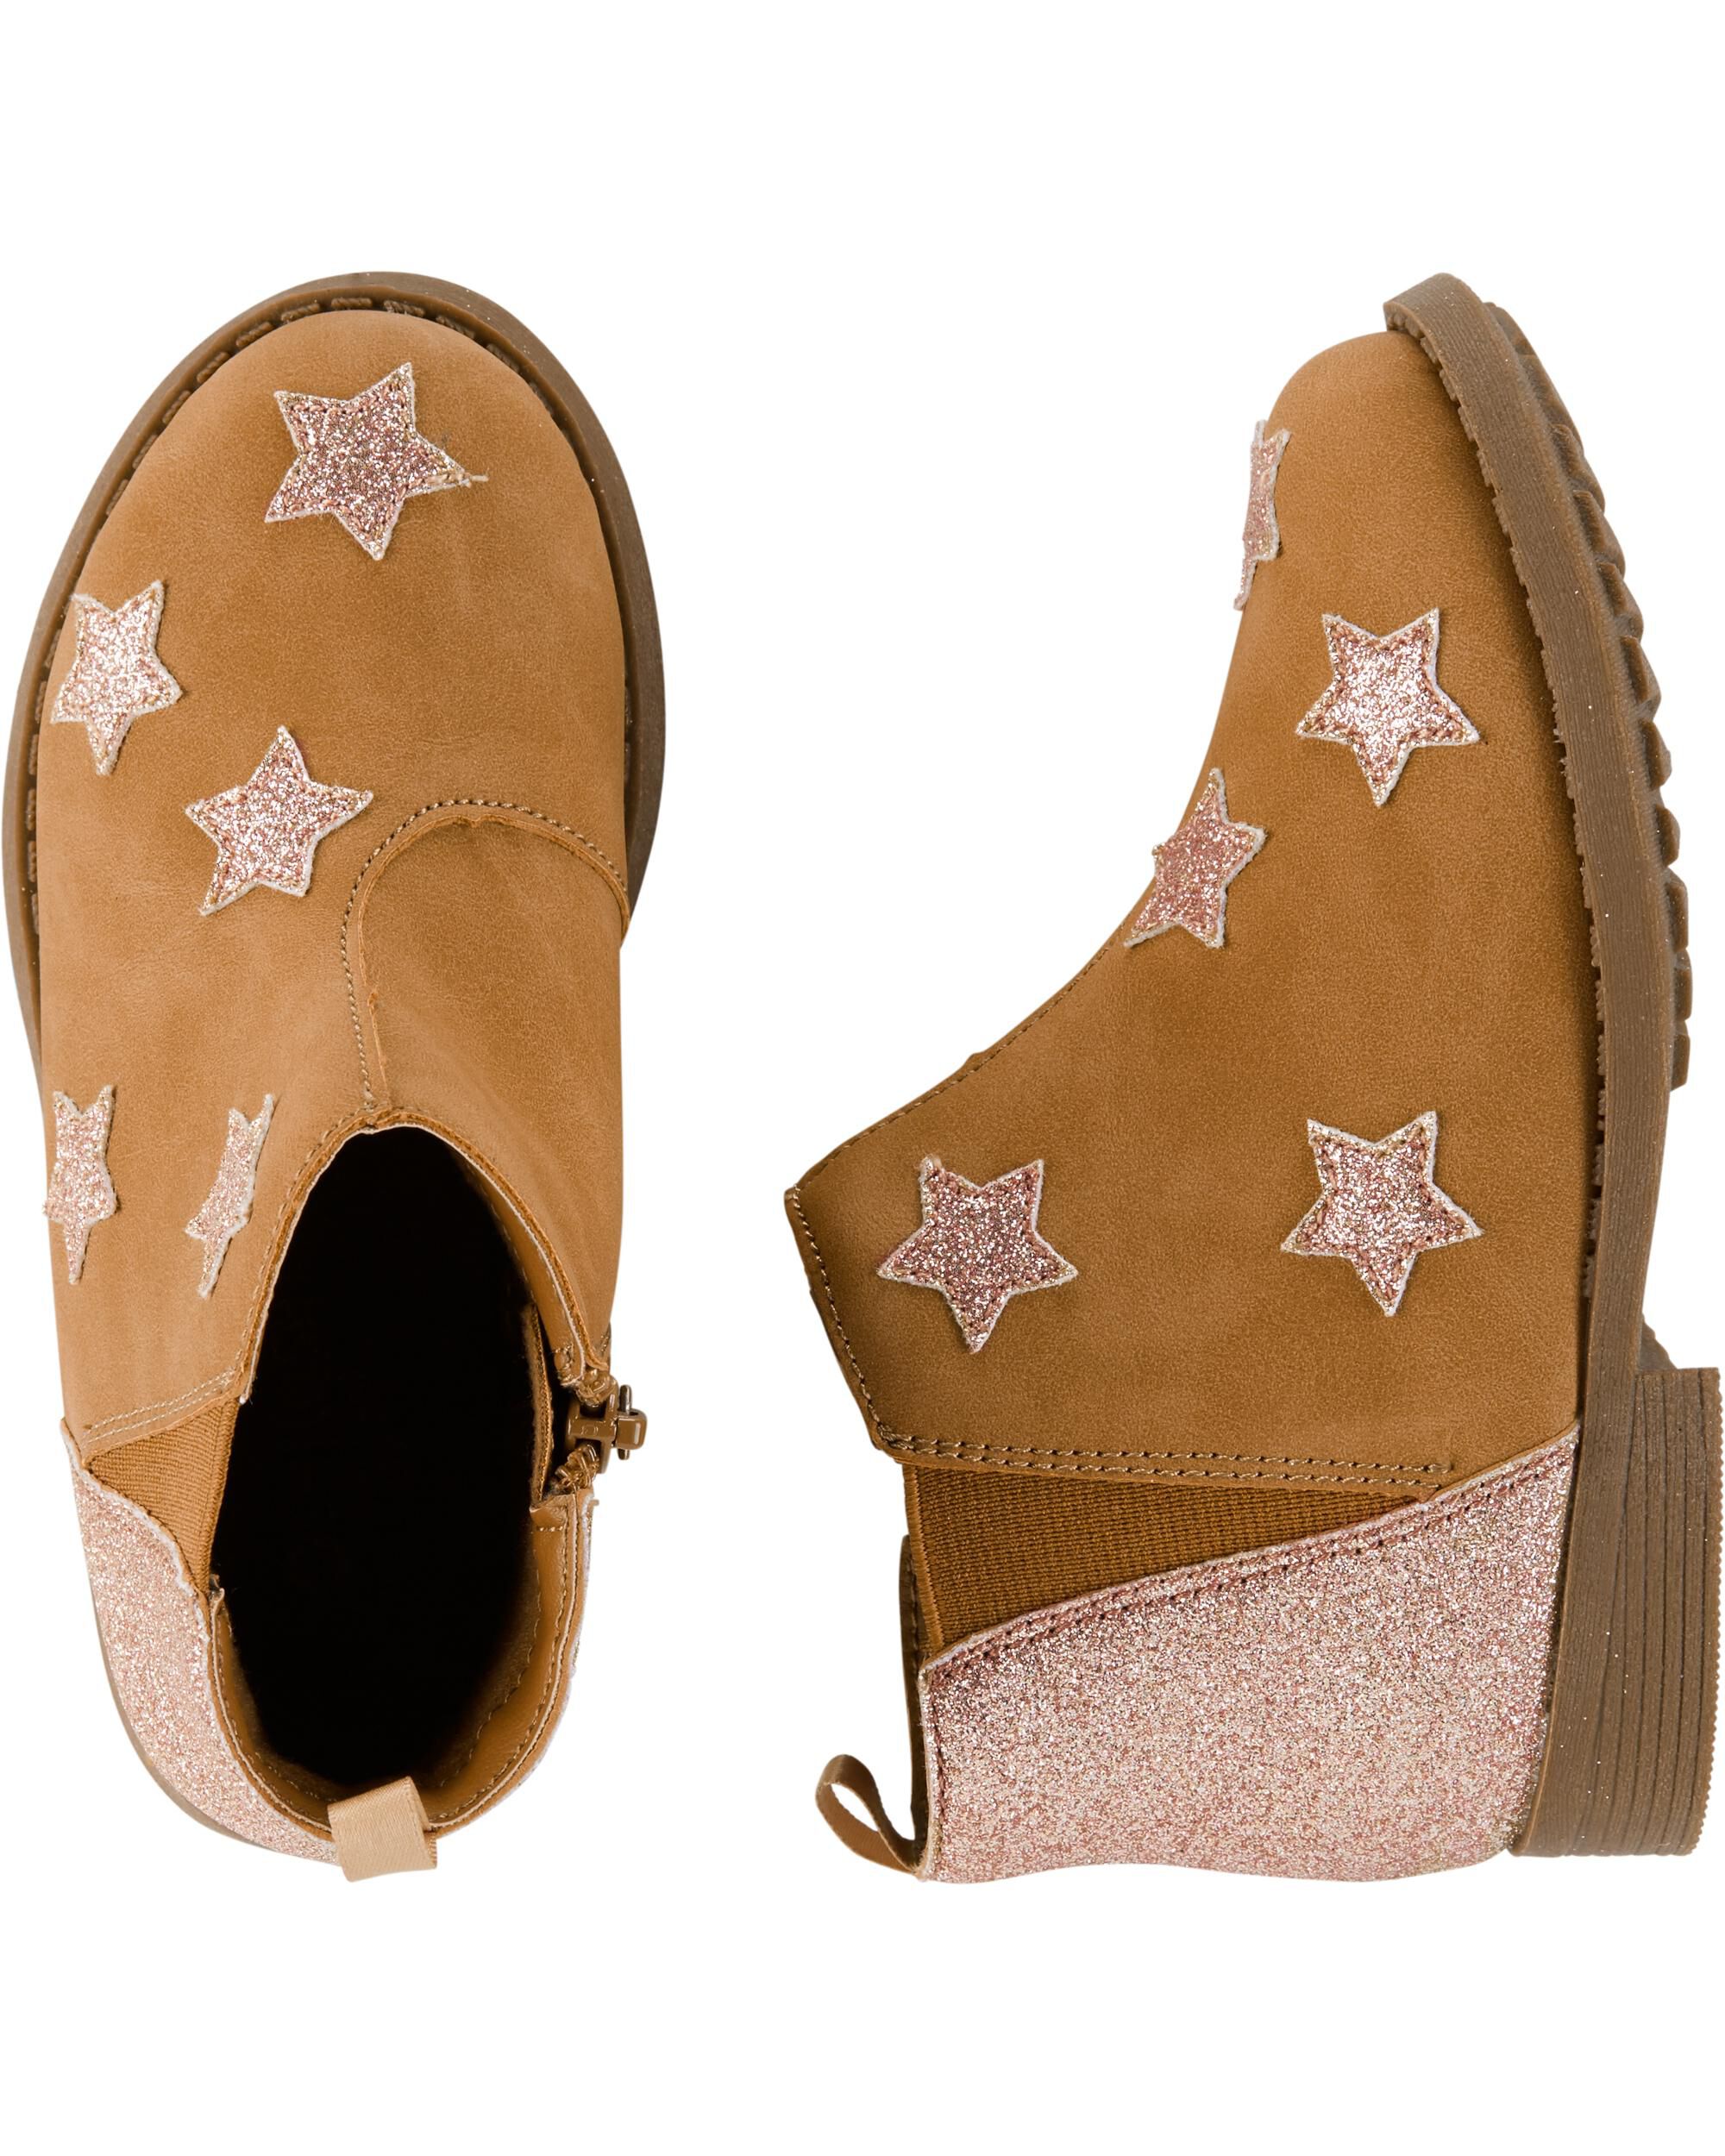 OshKosh Glitter Star Ankle Boots 